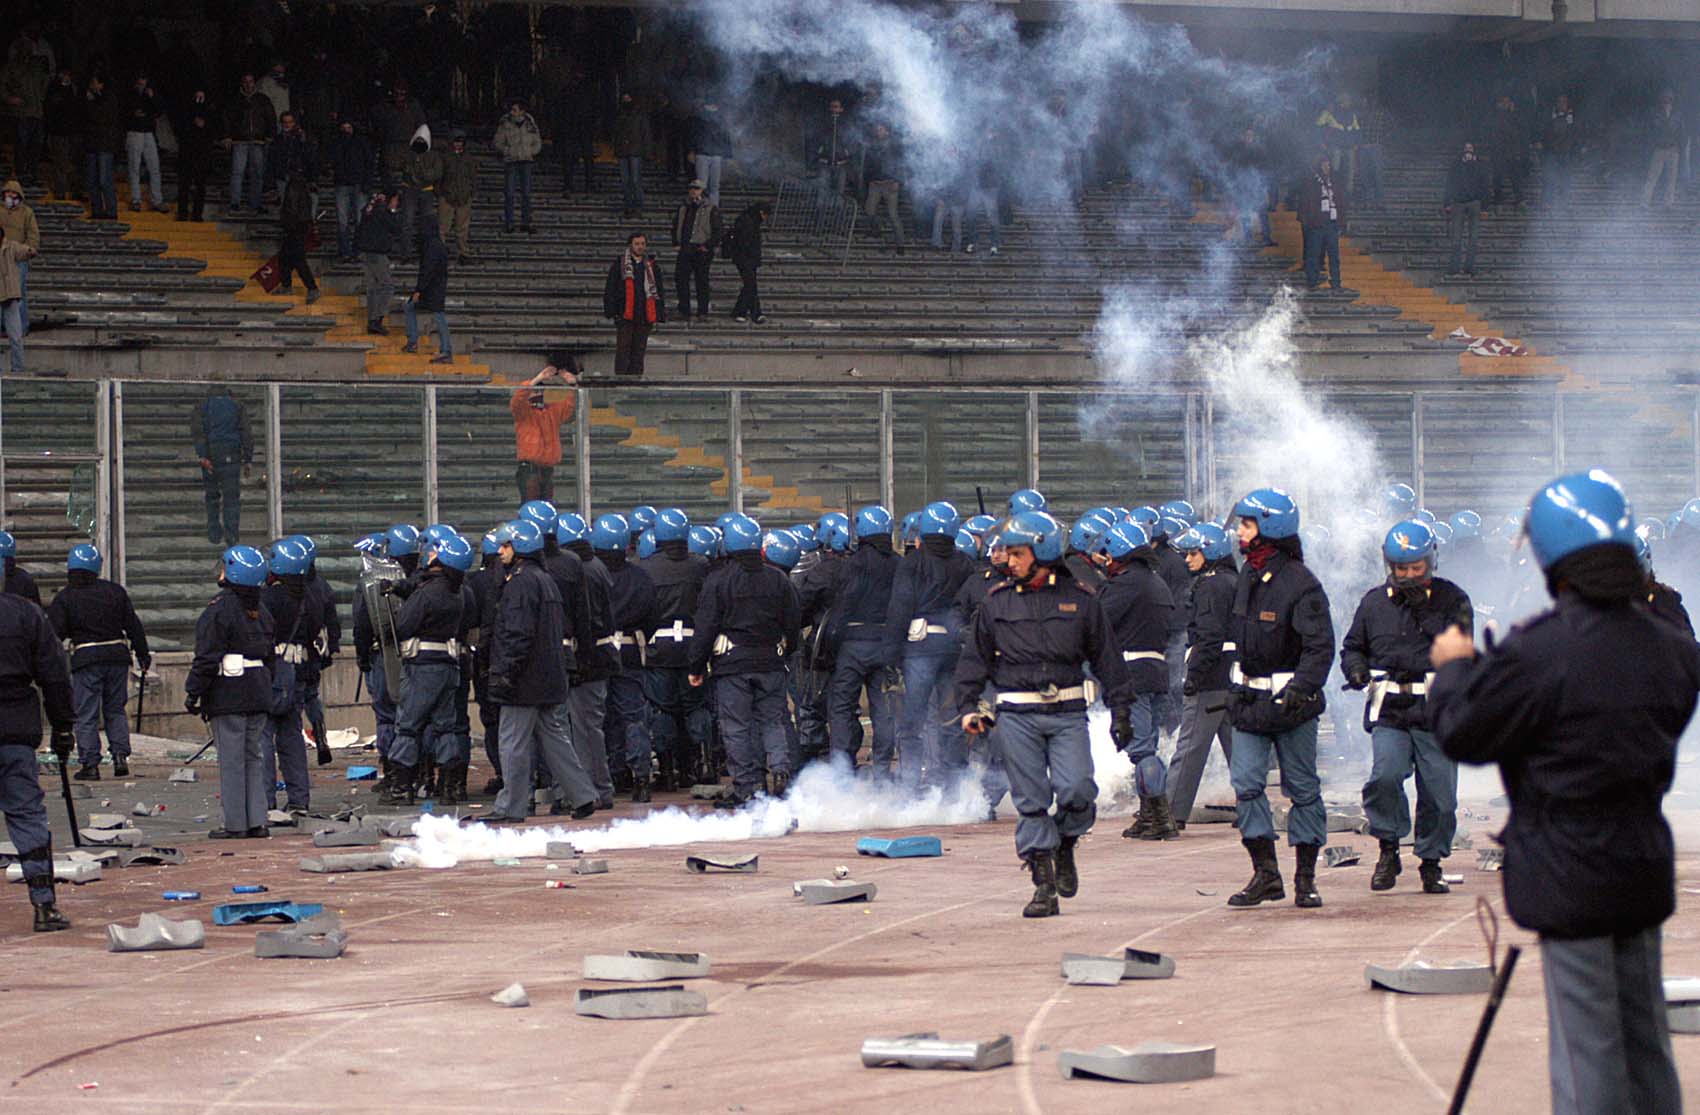 Costi sicurezza negli stadi: ipotesi sciopero contro la proposta di Renzi